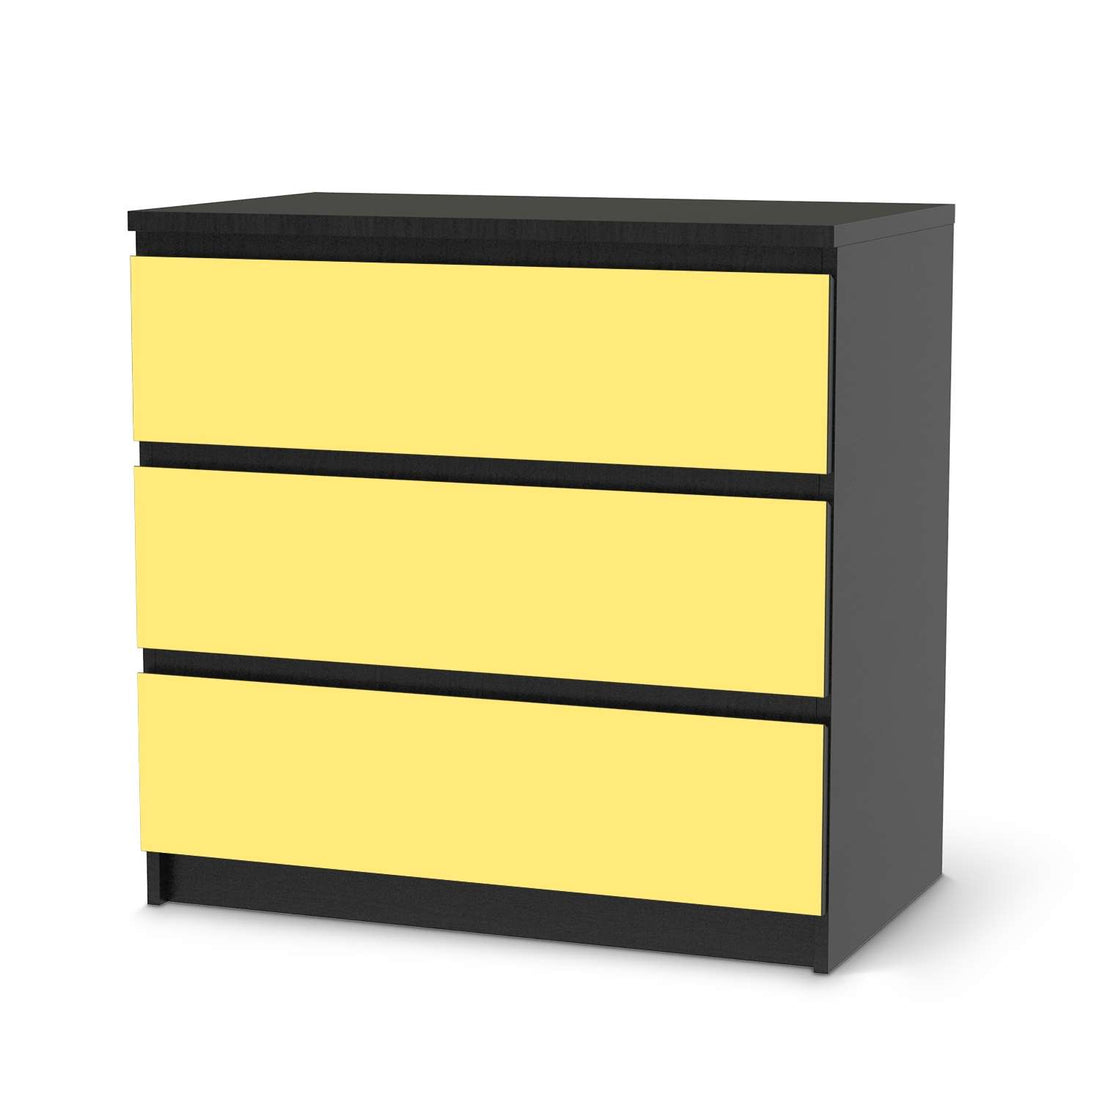 Klebefolie für Möbel Gelb Light - IKEA Malm Kommode 3 Schubladen - schwarz